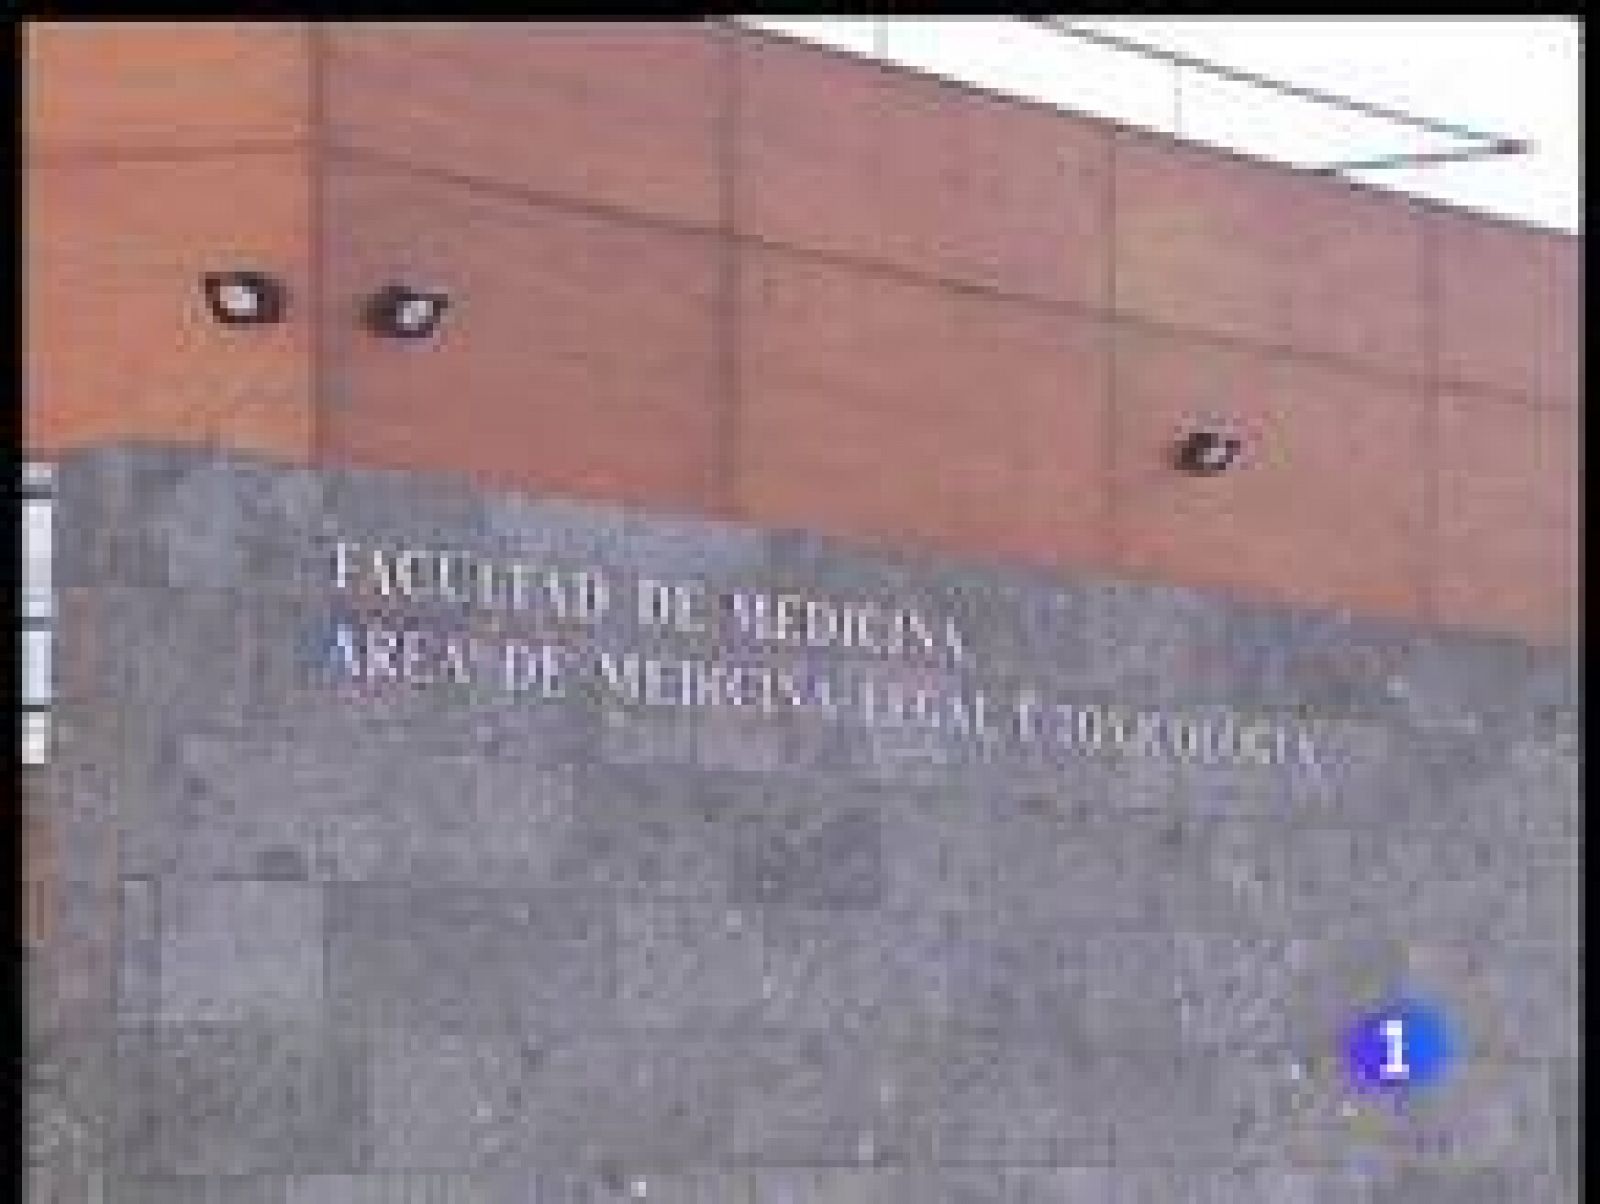  El abogado del hombre al que se acusó de las lesiones de la niña de 3 años fallecida en Tenerife y que fue puesto hoy en libertad sin cargos, anunció que su defendido no descarta querellarse contra los médicos que atendieron a la menor.
